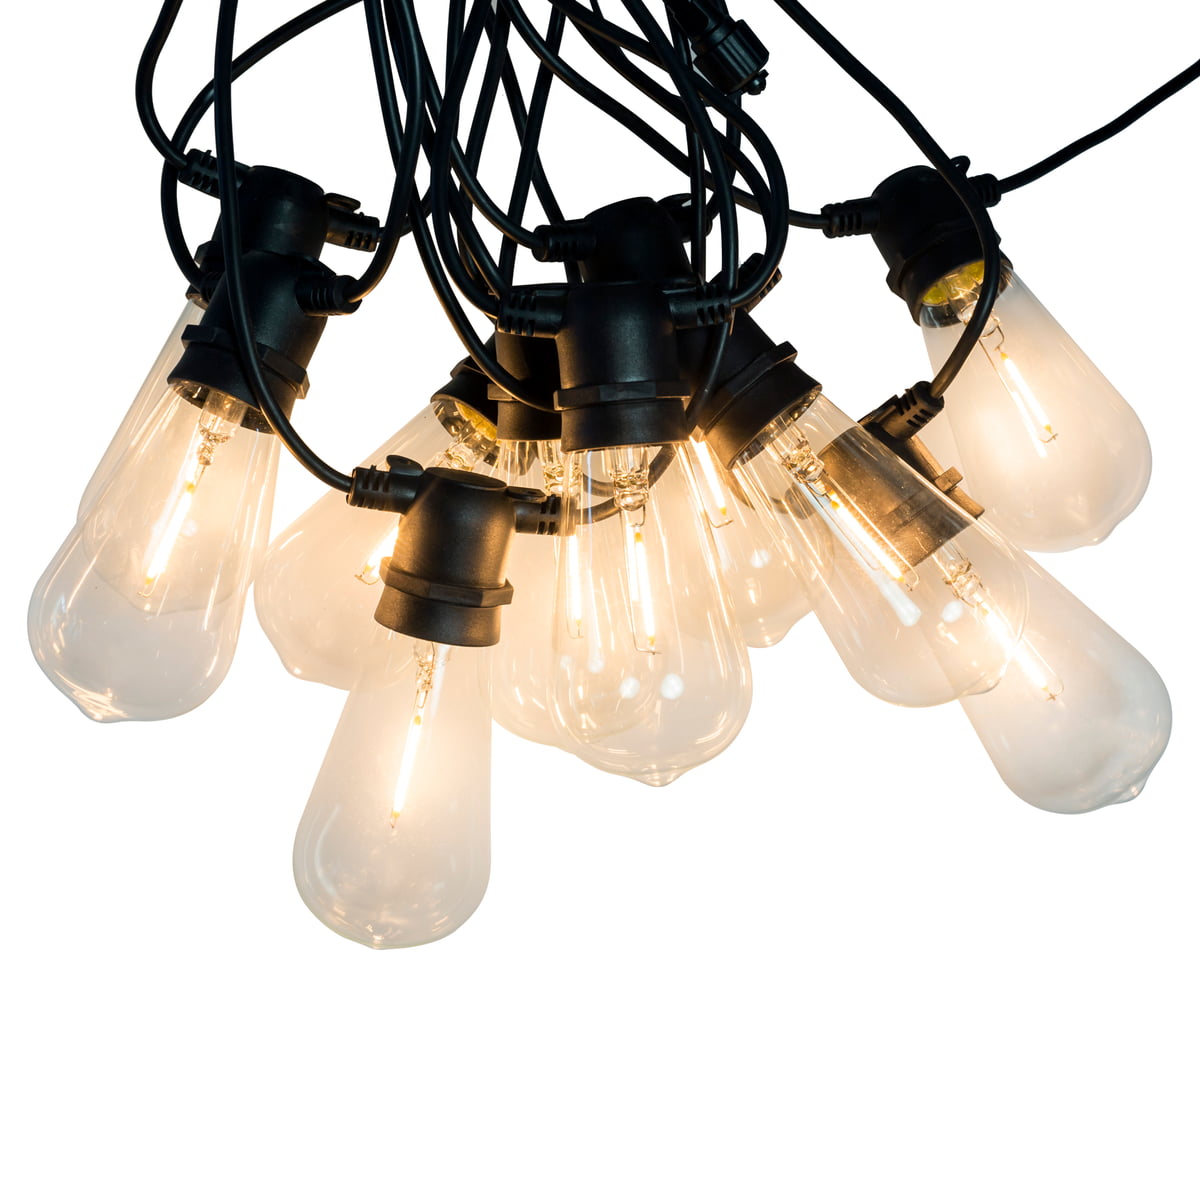 https://cdn.connox.de/m/100030/257765/media/CoCo-Connox-Collection/Lichterketten/Connox-Collection-LED-Lichterkette-Indoor-Outdoor-IP-44-10-Lampen-oval-Kabel--schwarz.jpg